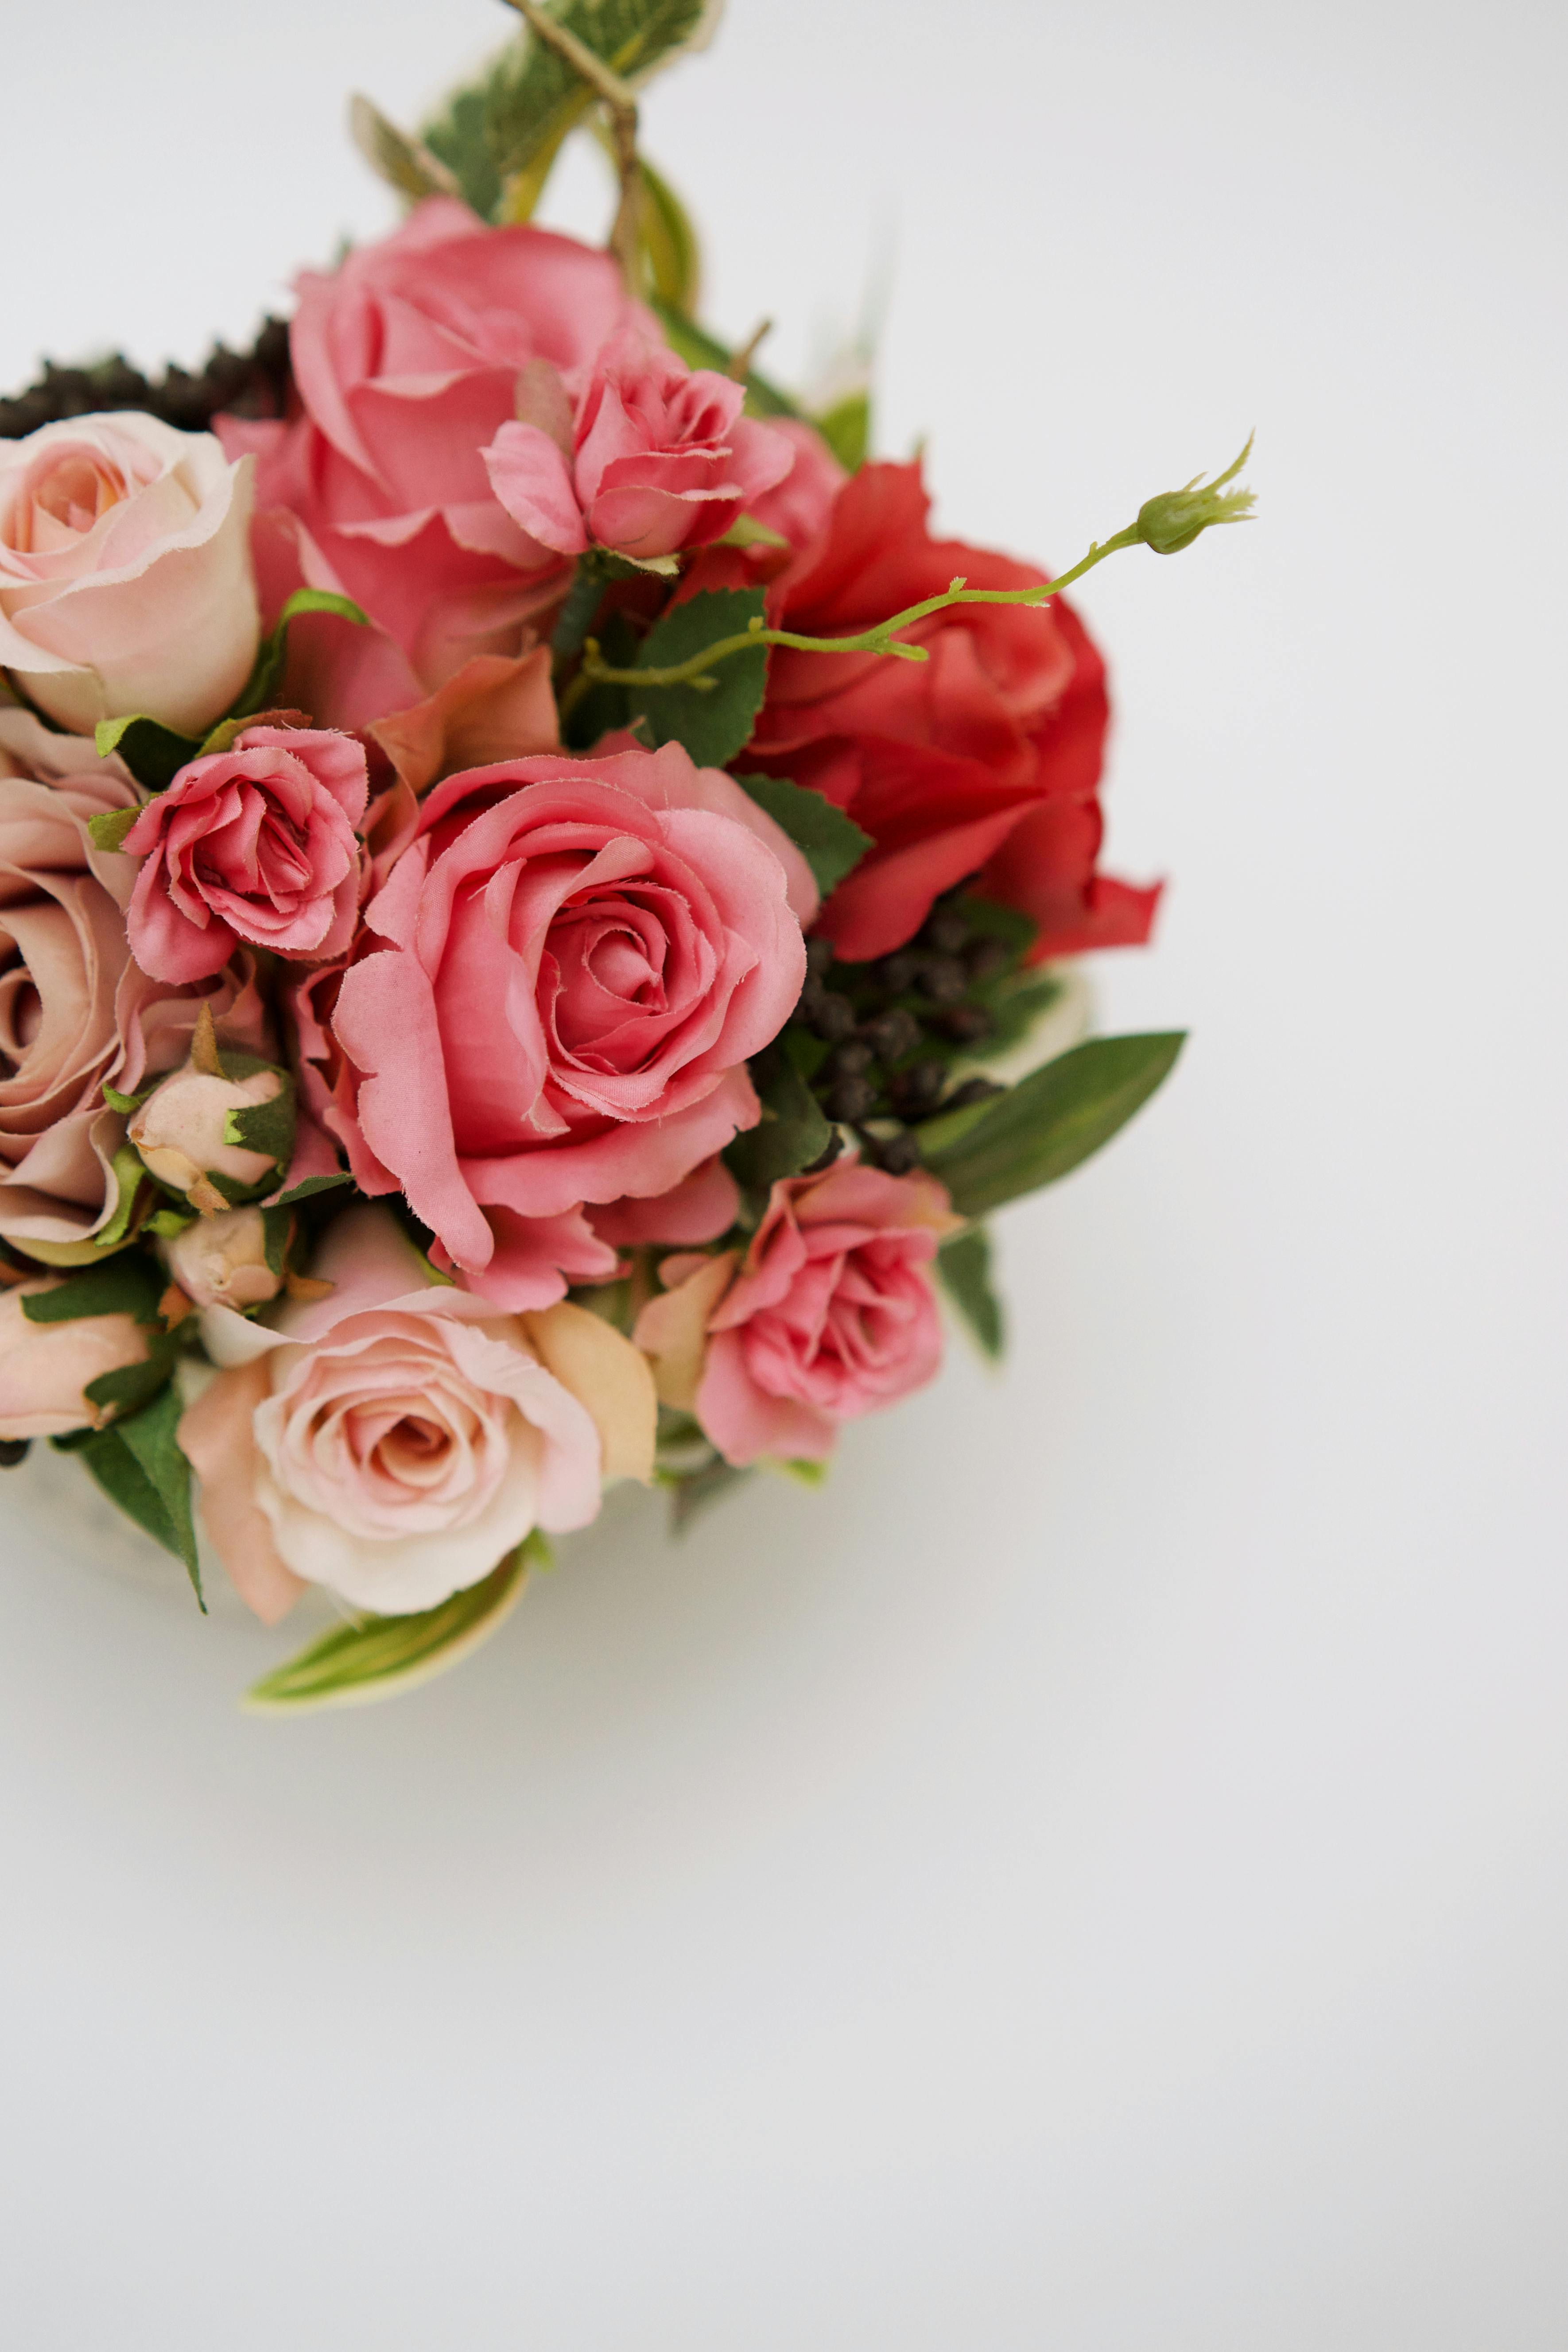 Hình ảnh tuyệt đẹp với bó hoa hồng sáng trên nền trắng sẽ mang đến cho bạn cảm giác tươi mới và đầy năng lượng. Hãy cùng đắm mình vào vẻ đẹp ngọt ngào của chiếc bó hoa này và tìm kiếm những ý tưởng mới mẻ cho sự sáng tạo của bạn.